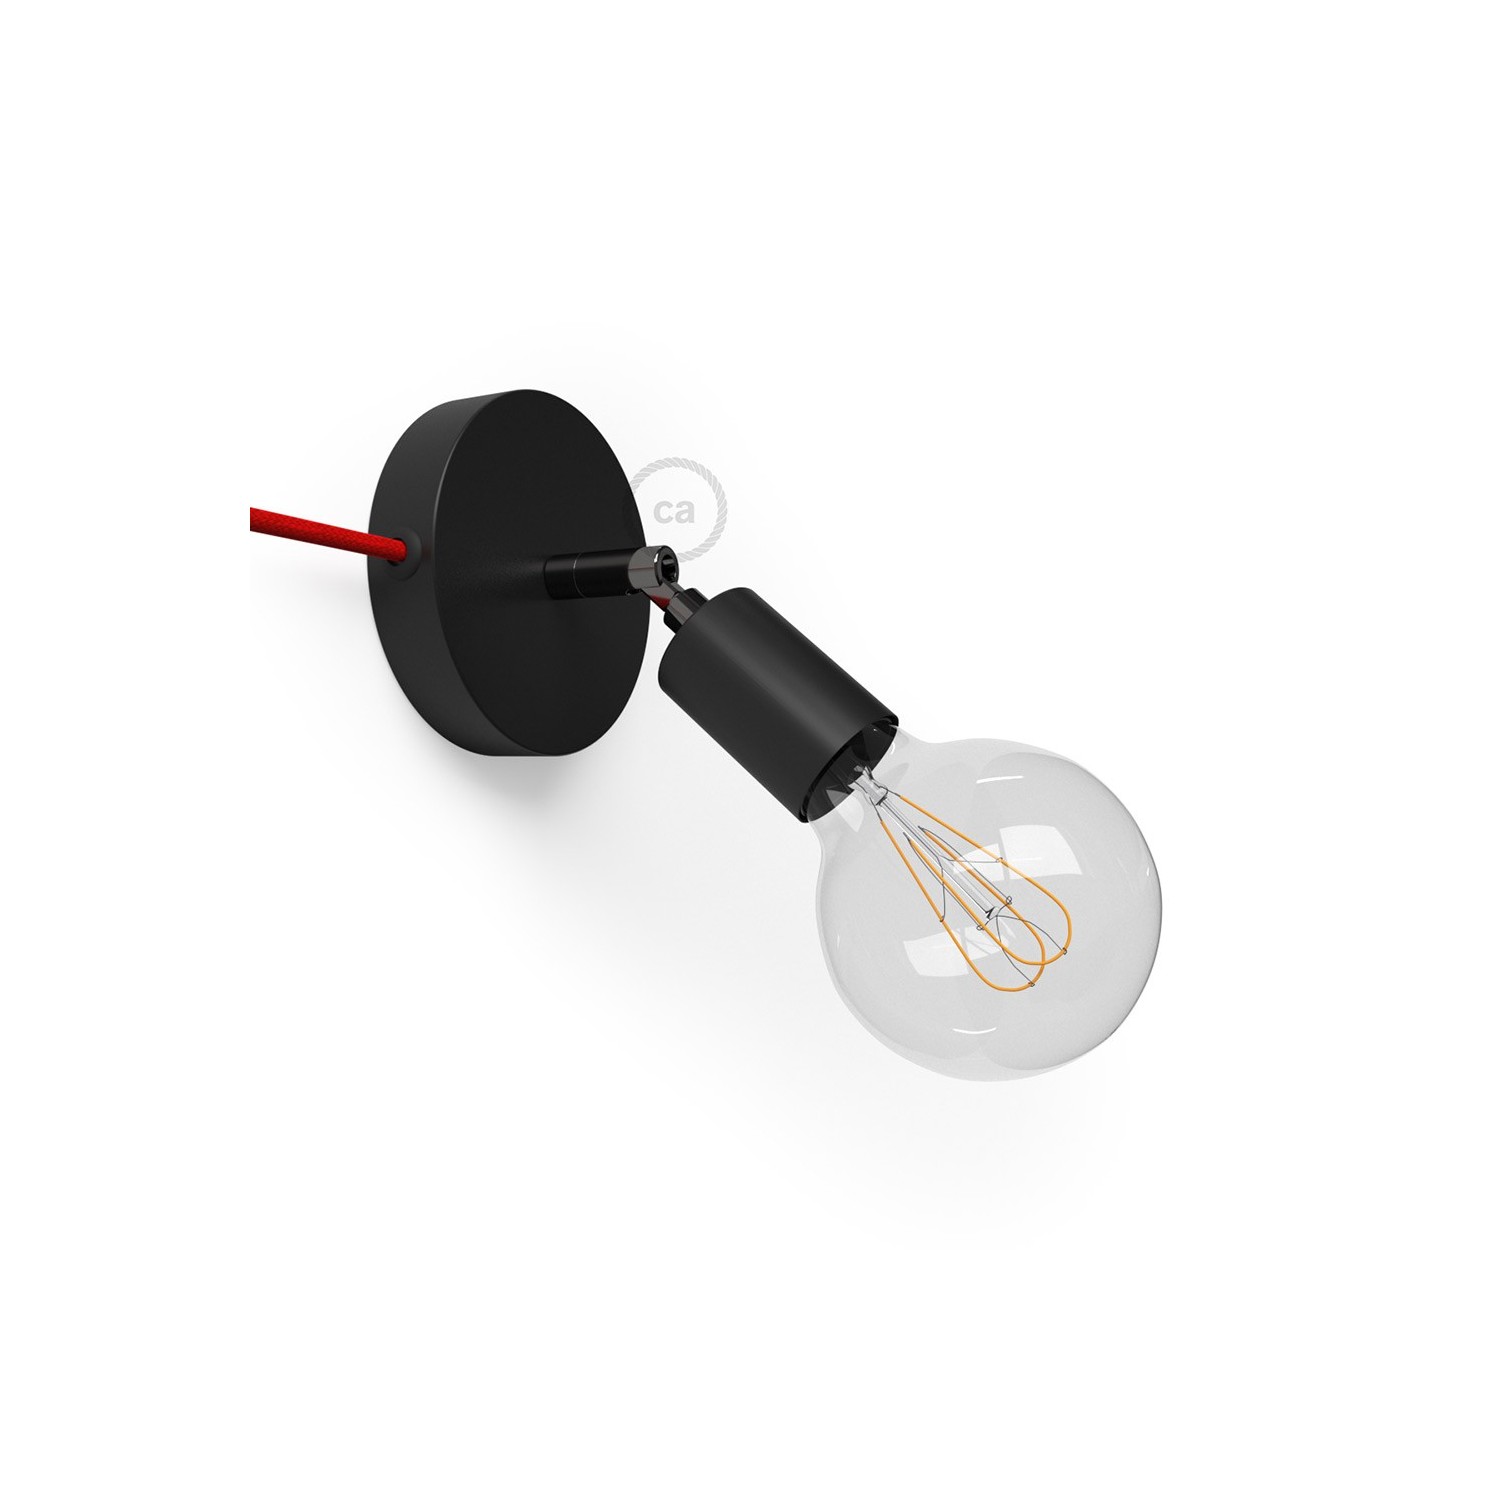 Spostaluce Metallo 90°, črno prilagodljivo svetilo s tekstilnim kablom in stranskima izhodoma